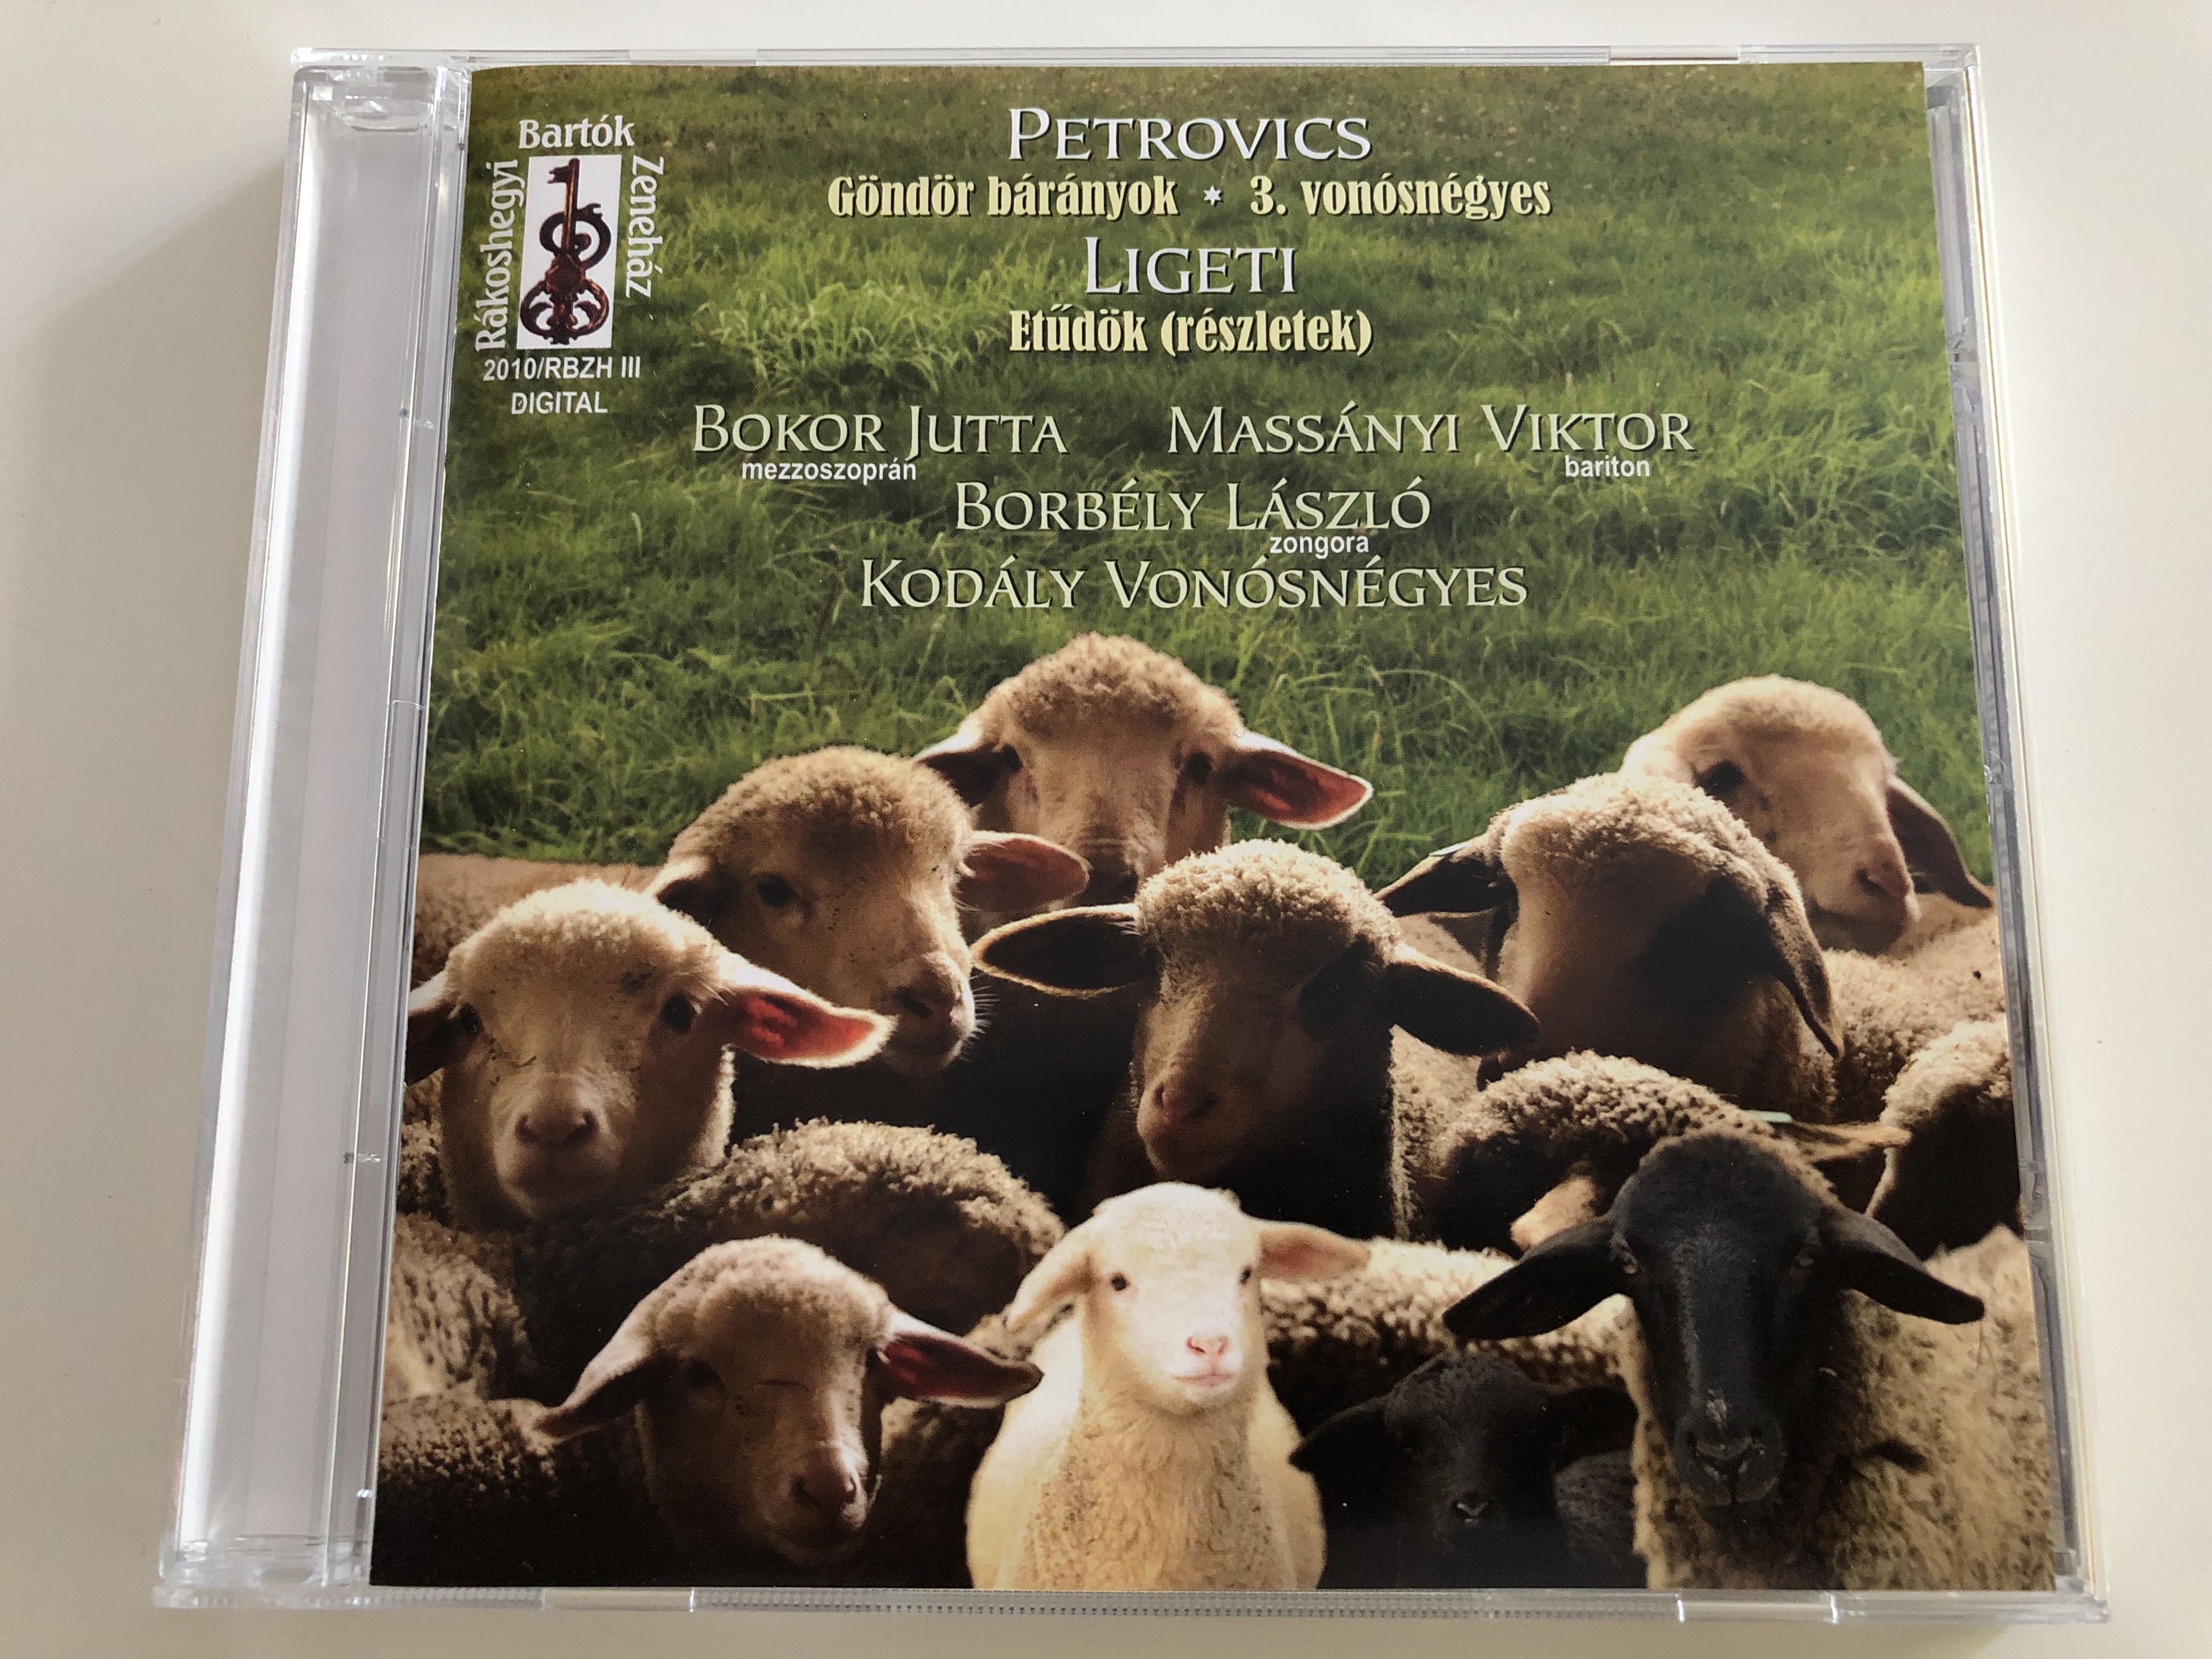 petrovics-g-nd-r-b-r-nyok-3.-von-sn-gyes-ligeti-et-d-k-r-szletek-bokor-jutta-mezzo-soprano-mass-nyi-viktor-baritone-borb-ly-l-szl-piano-kod-ly-von-sn-gyes-audio-cd-2010-1-.jpg